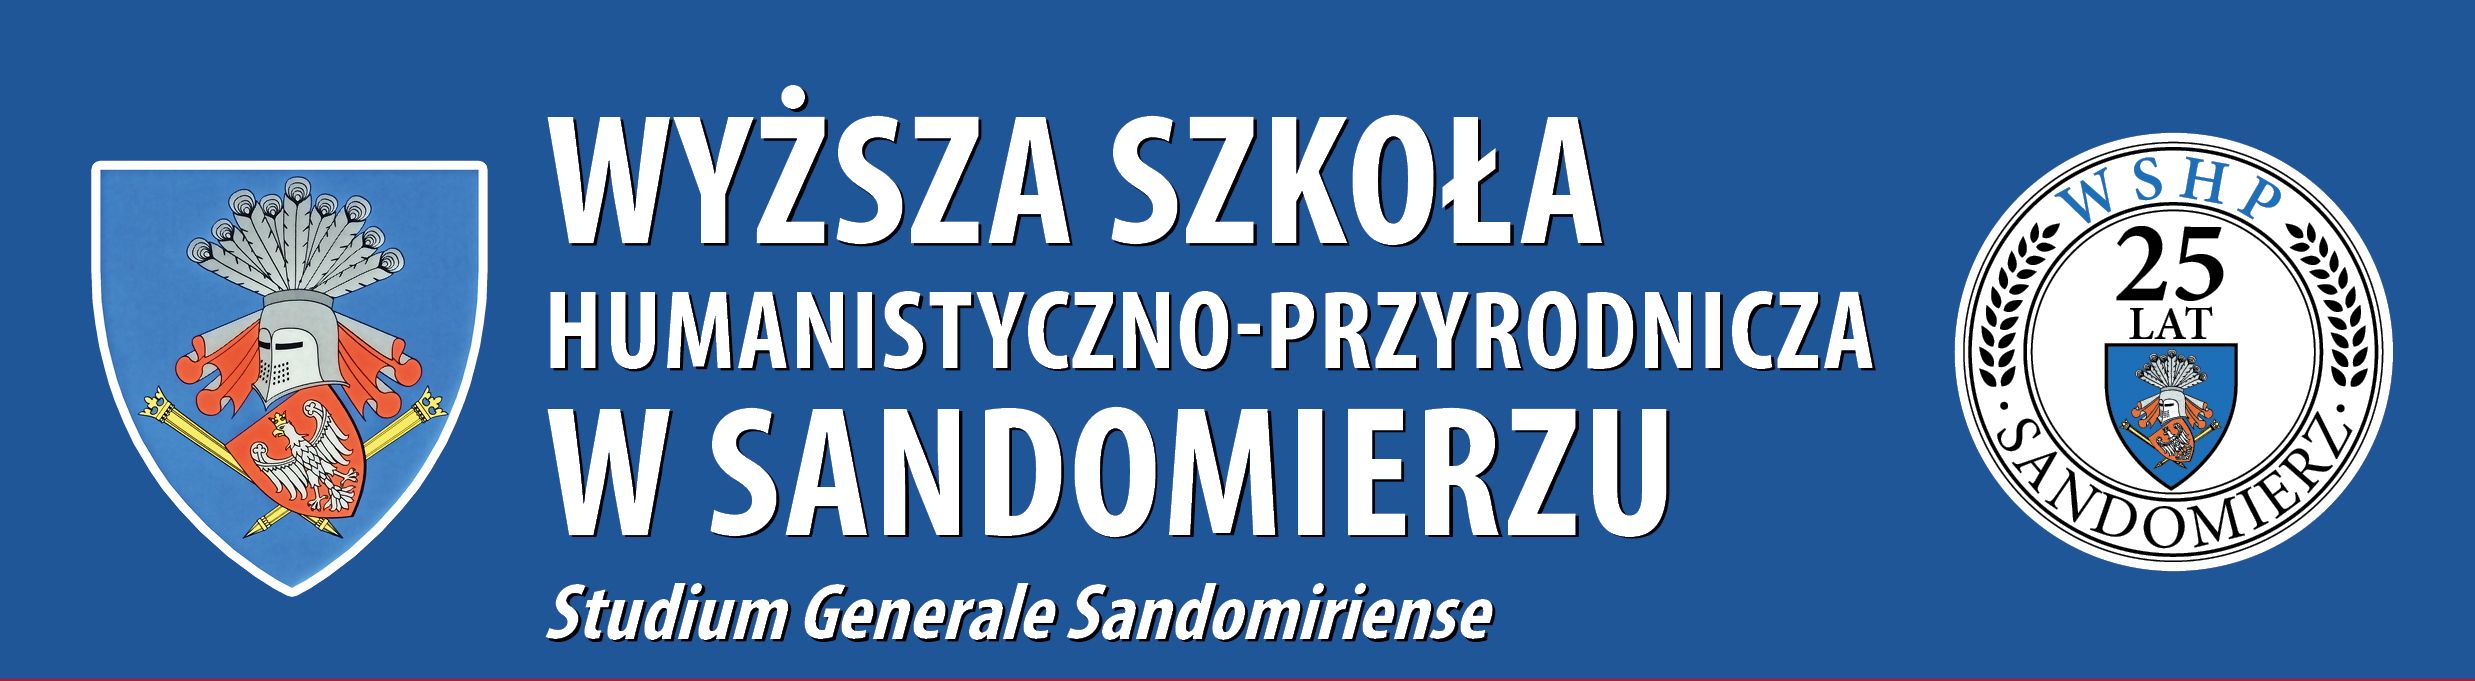 Studium Generale Sandomiriense Higher School of Humanities and Nature in Sandomierz